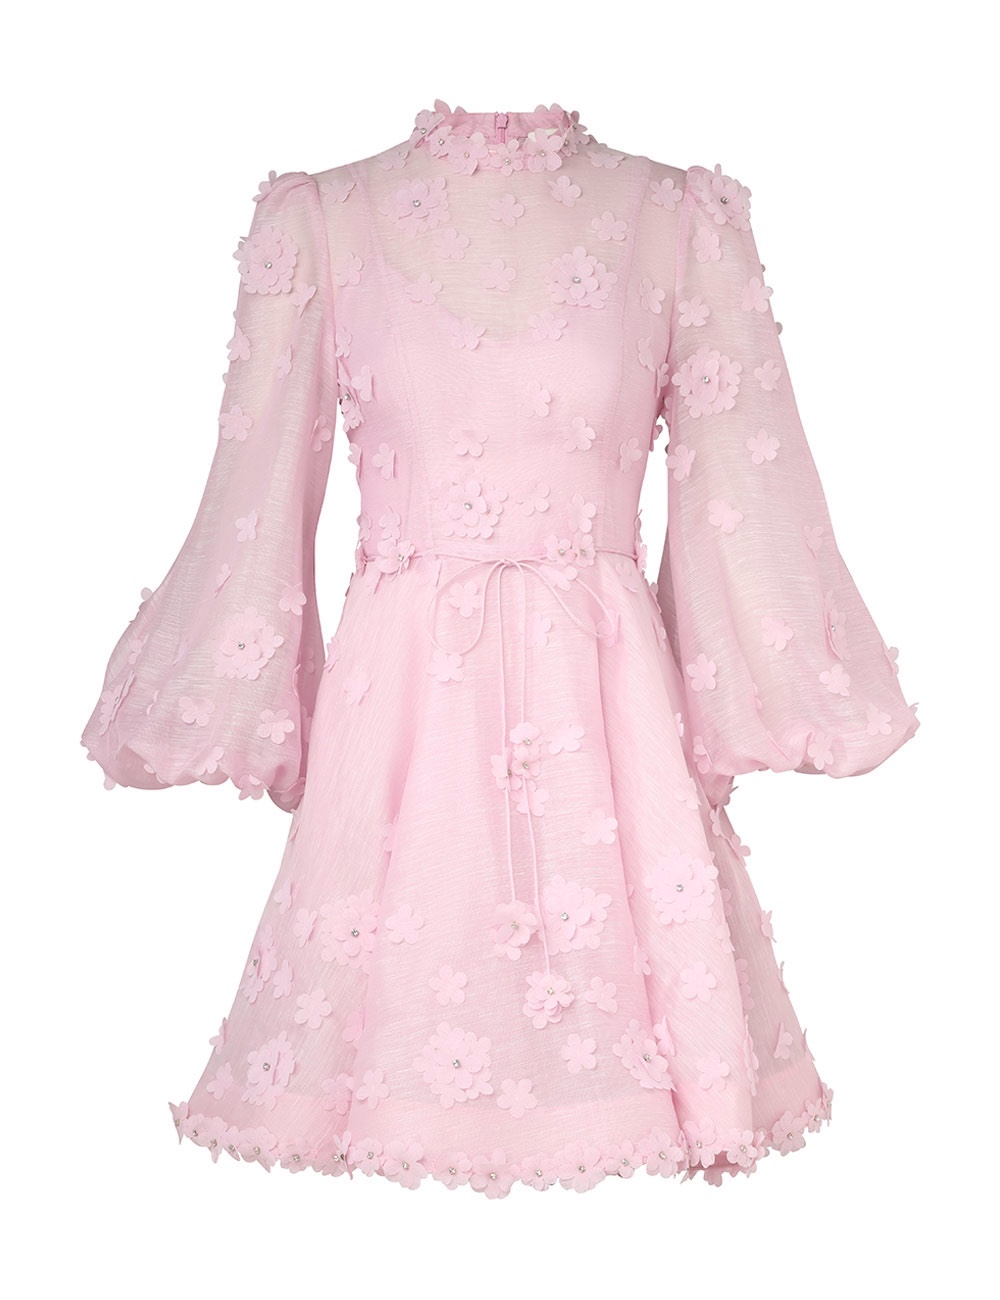 （爆款大量现货发售）#B1024 澳洲 Zimmermann立体花朵公主仙女甜美连衣短裙颜色：白色 粉色码数：0/S 1/M 2/L 3/XL